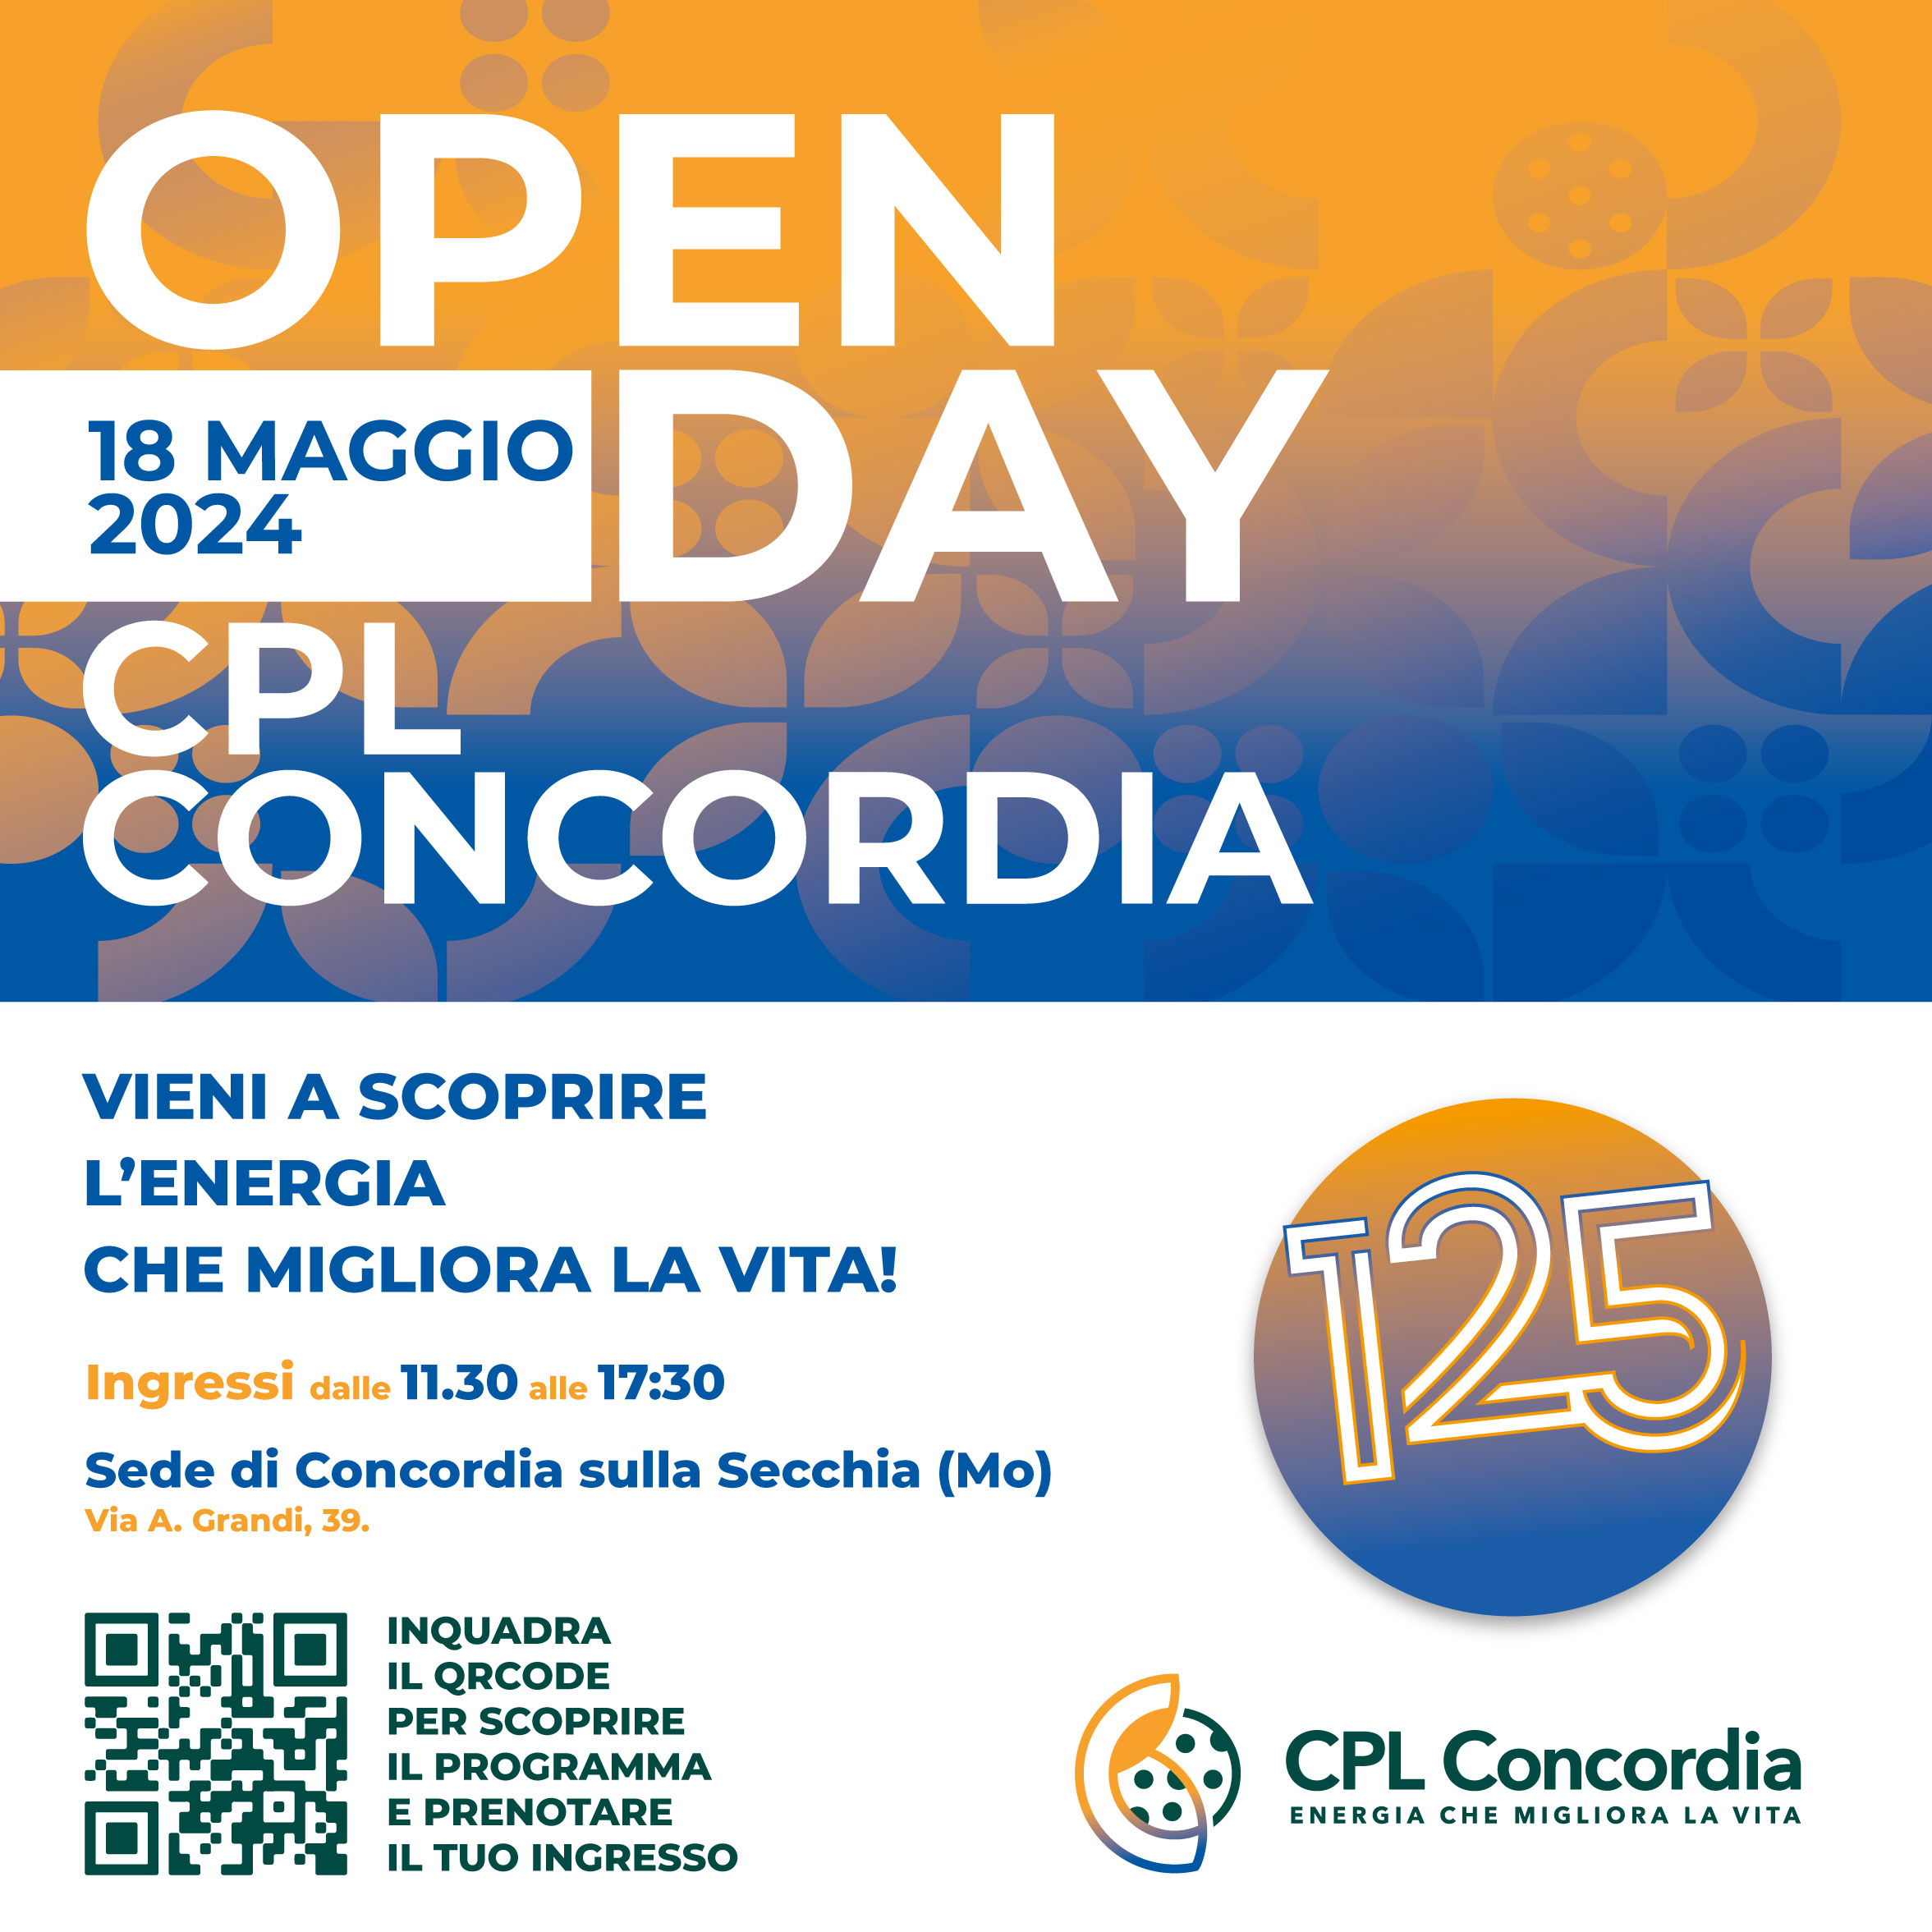 CPL CONCORDIA: il 18 maggio un Open Day per festeggiare i 125 anni